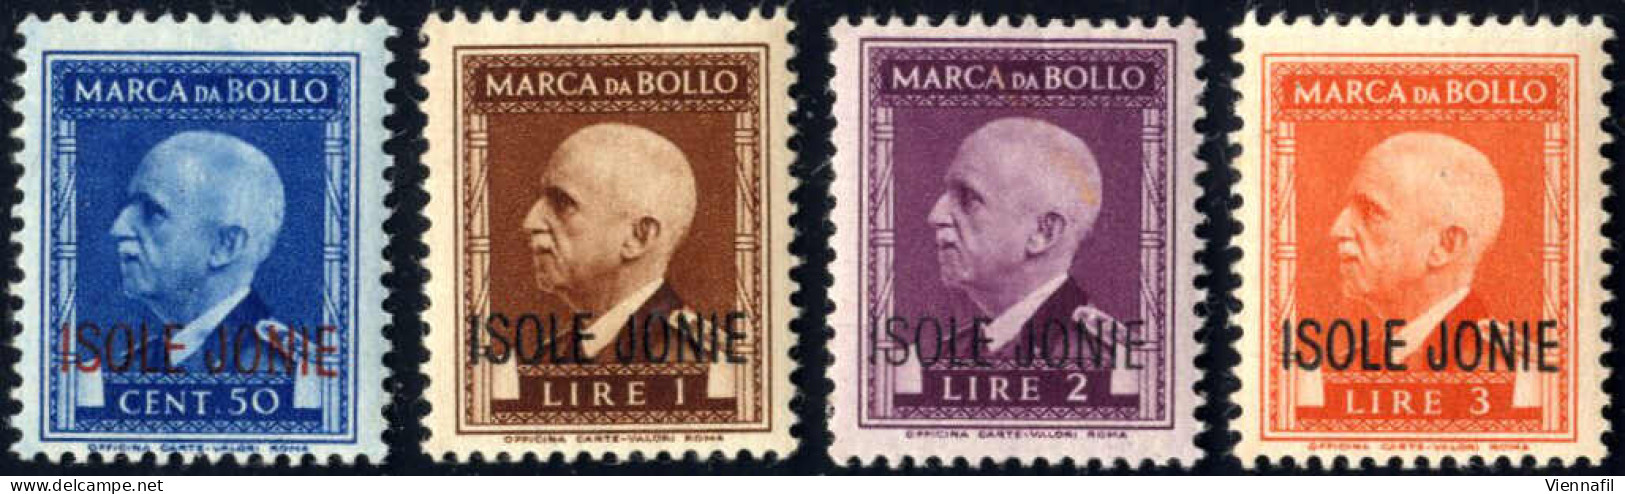 ** 1941, Marche Da Bollo Con Effigie Di VE III Con Soprastampa "ISOLE JONIE", Serie Di 8 Valori Da 50 C. A 50 L. Nuovi C - Ionian Islands